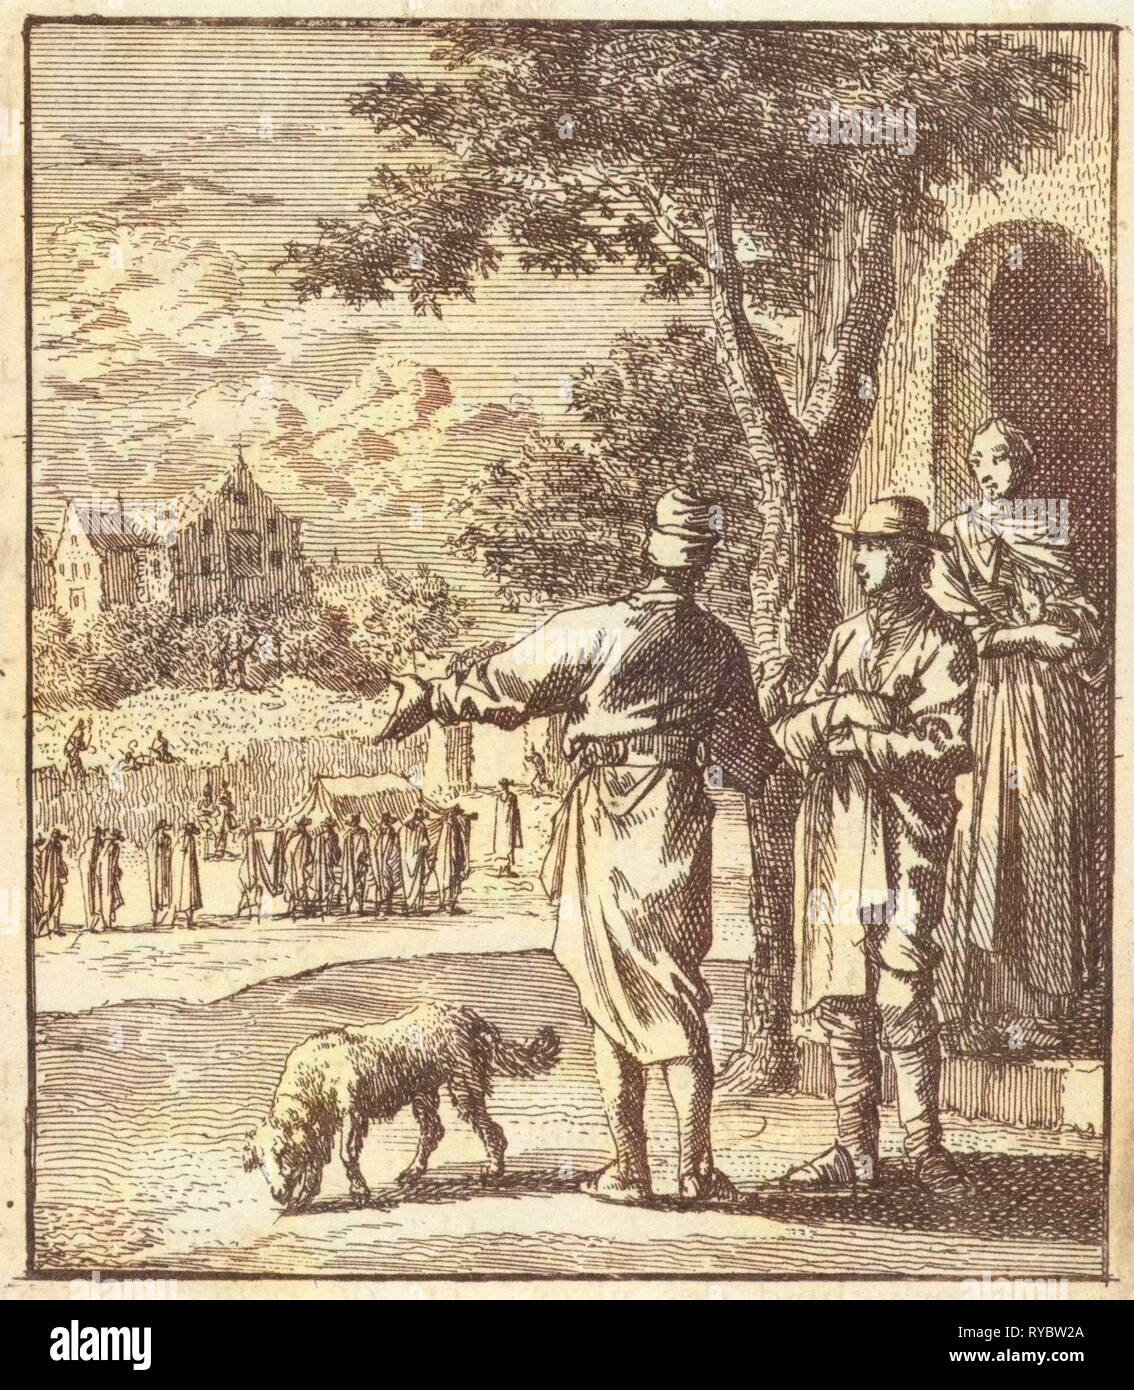 Two men witness a funeral passing, Jan Luyken, wed. Pieter Arentsz (II), Cornelis van der Sys, 1712 Stock Photo